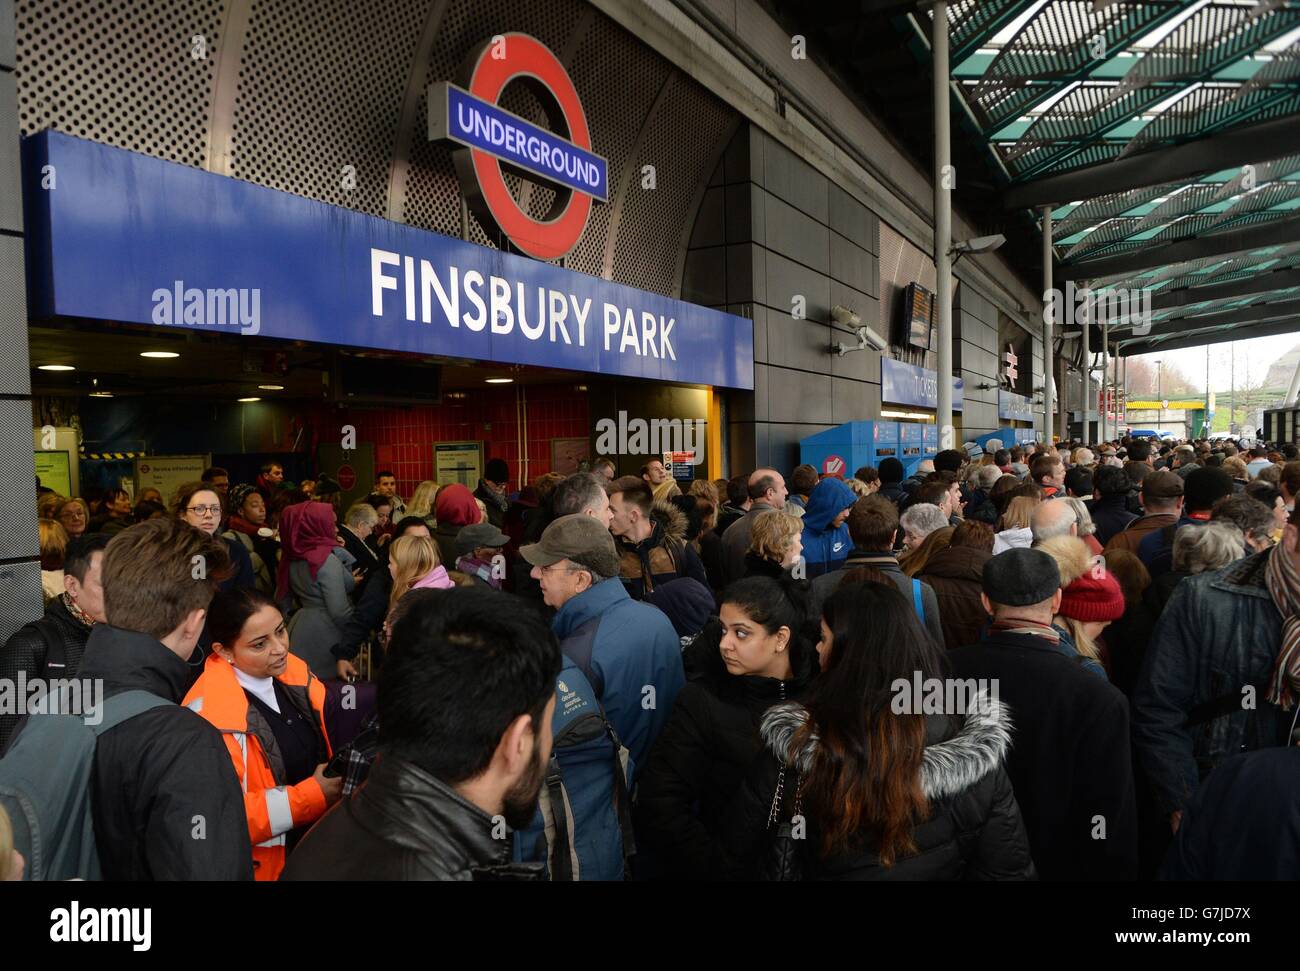 Reisende werden aus dem Bahnhof Finsbury Park in London ausgeschlossen, wo sie angewiesen wurden, zu fahren, da Züge in und aus King's Cross wegen überlaufender Network Rail-Ingenieurarbeiten nördlich des Bahnhofs gestrichen wurden, mit einem reduzierten Service morgen. Stockfoto